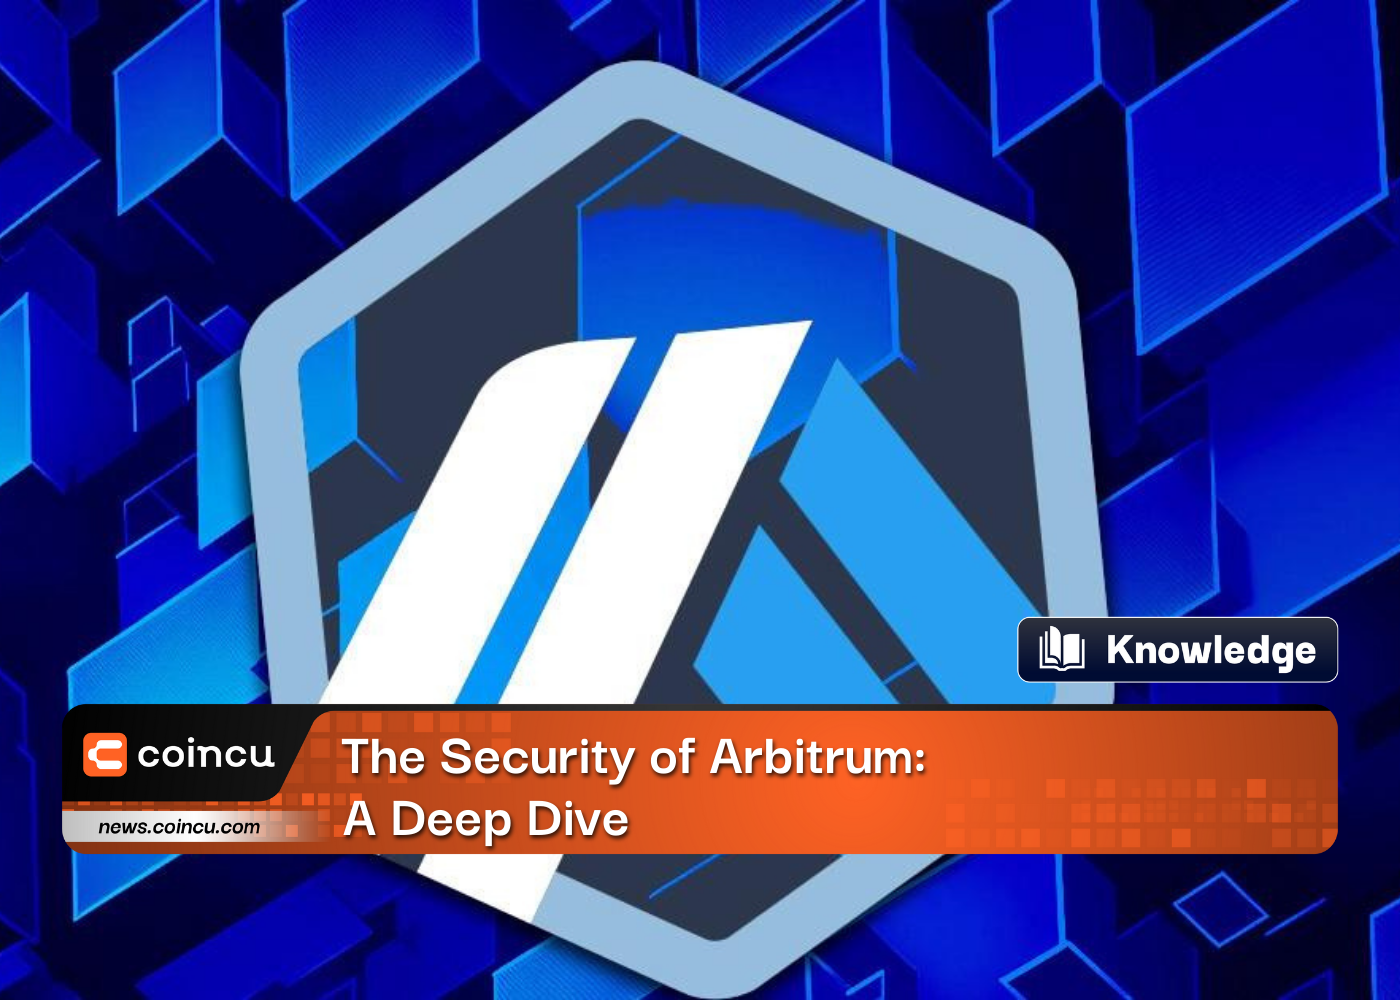 The Security of Arbitrum